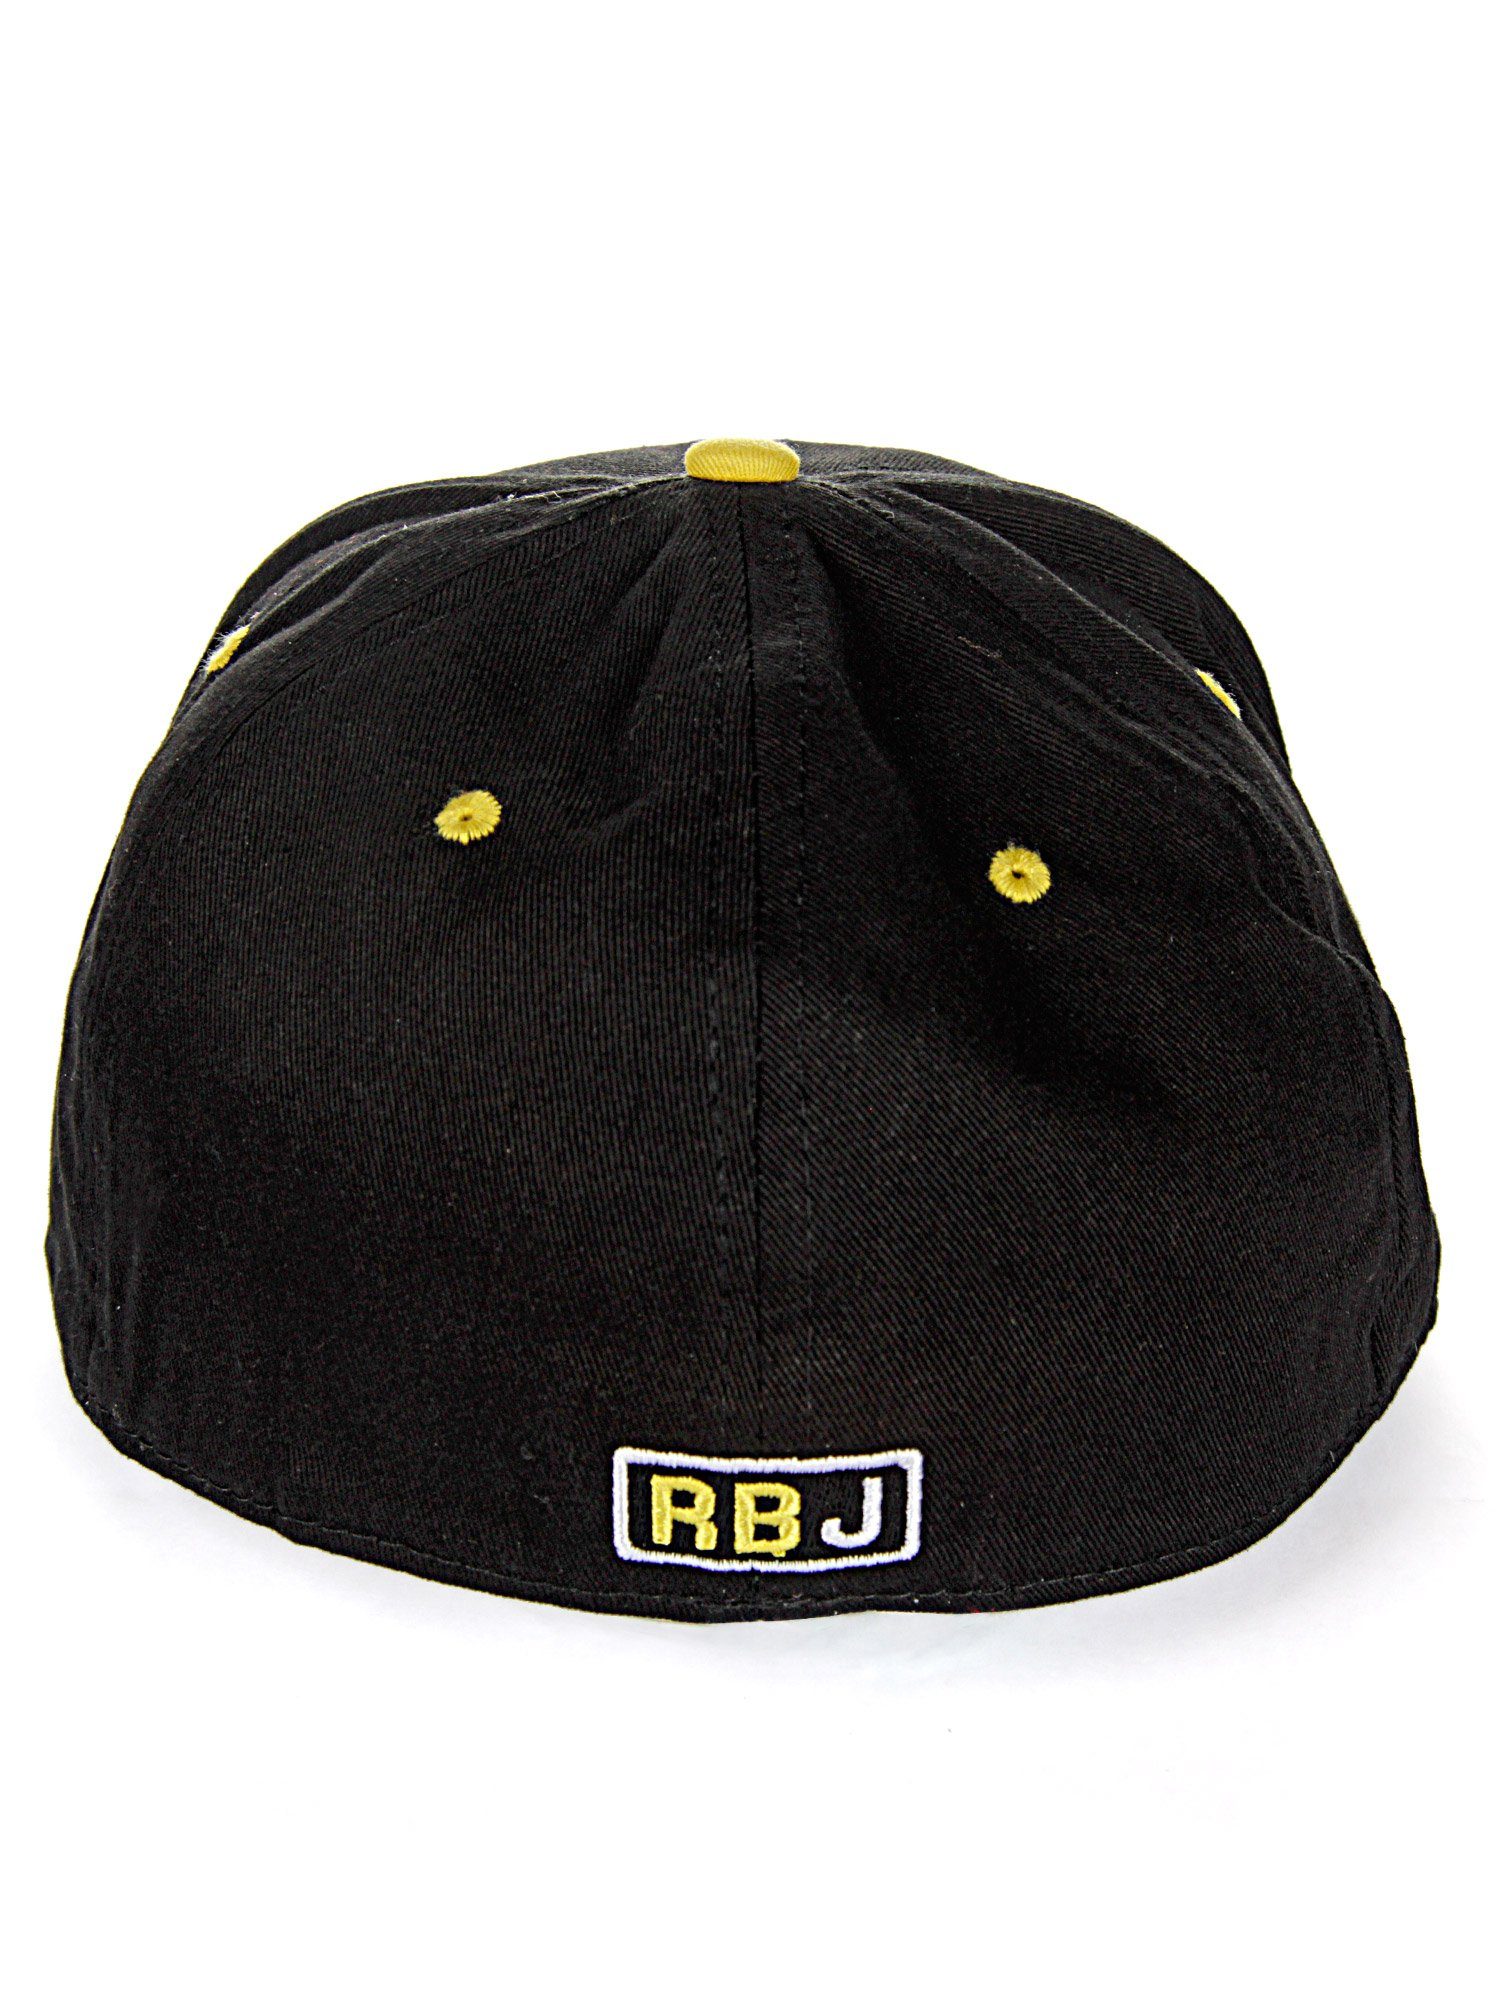 kontrastfarbigem Schirm RedBridge Durham Baseball Cap schwarz-gelb mit